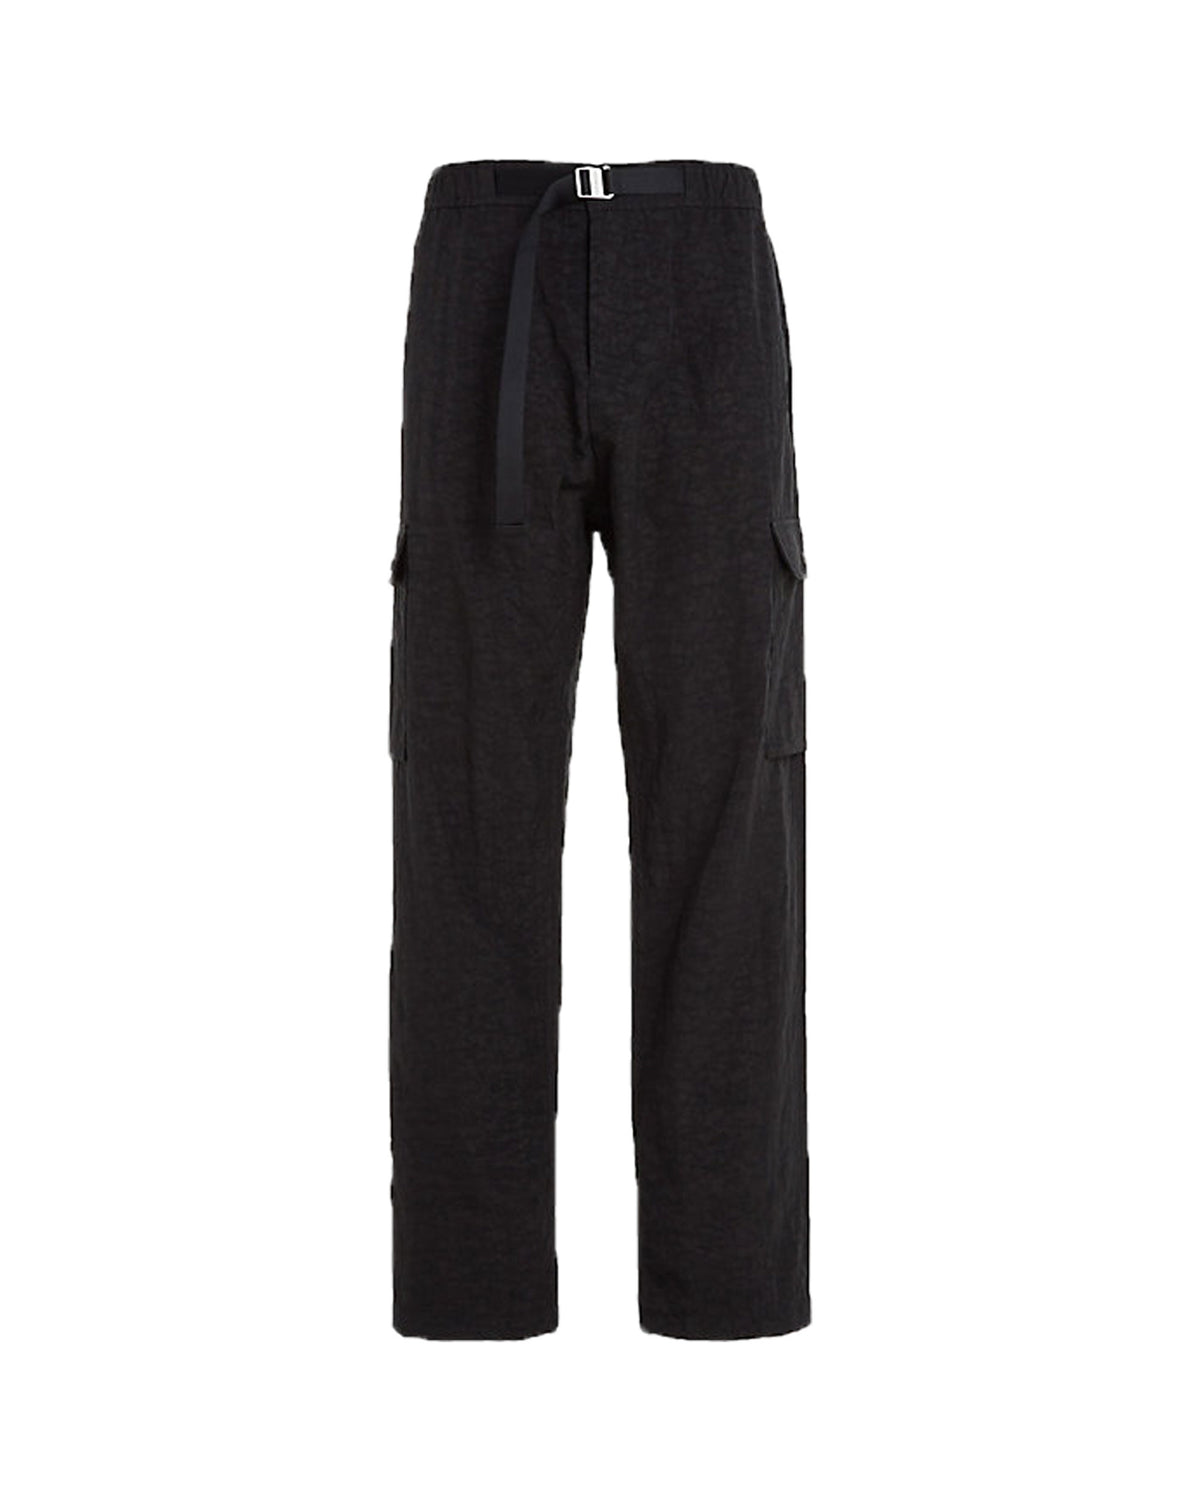 Man Pant Calvin Klein Jeans Nylon Oxford Cargo Black